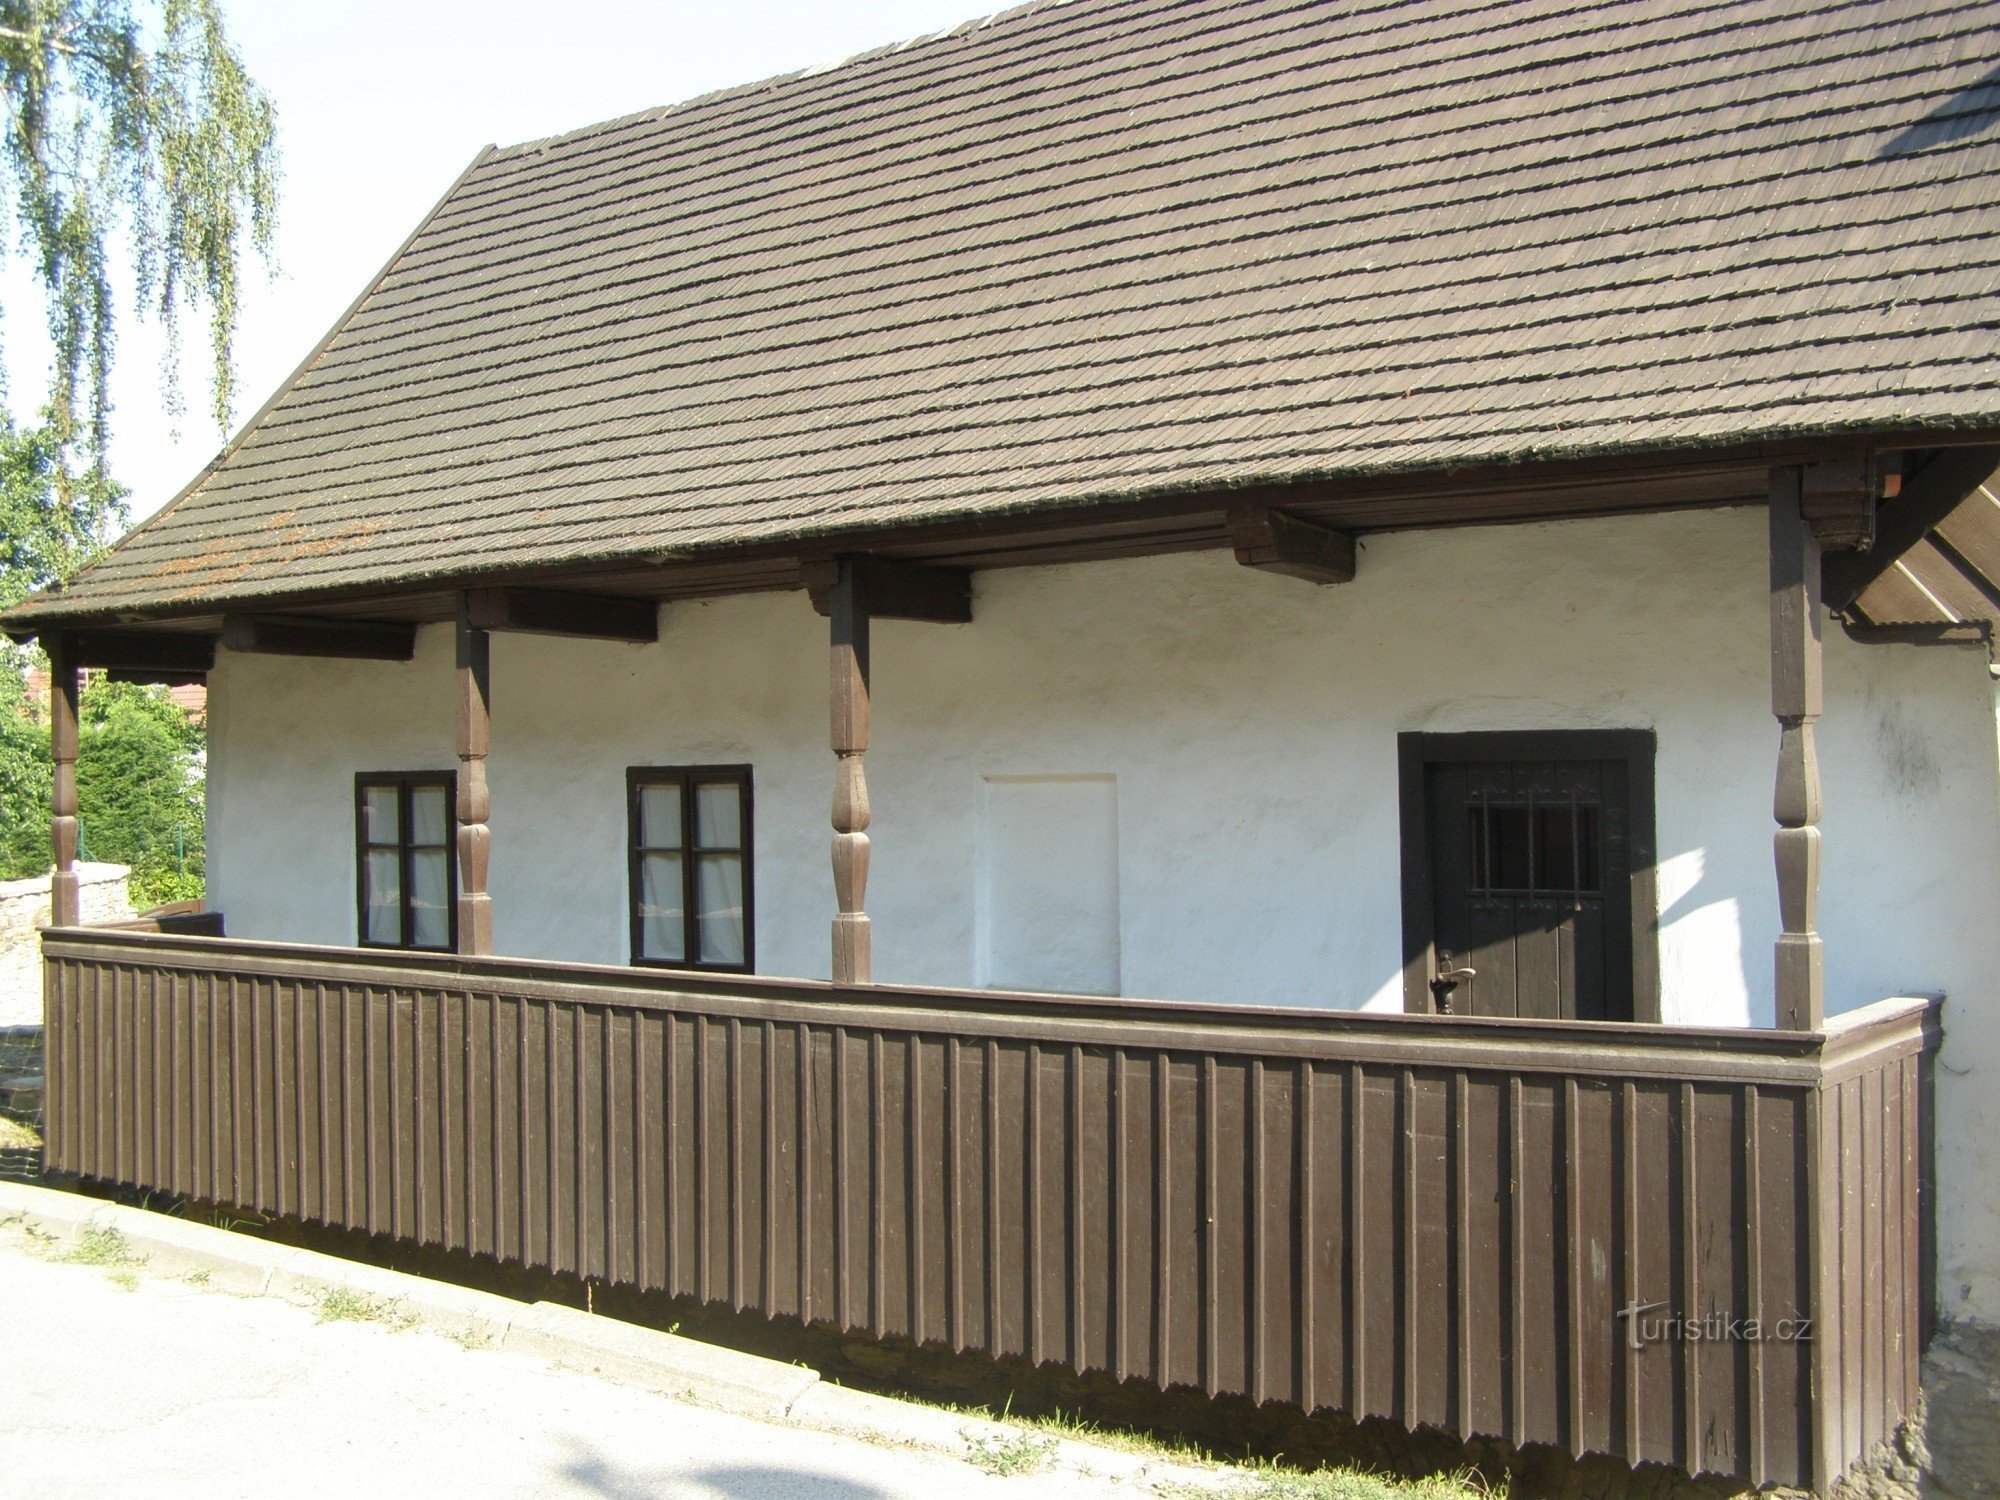 Dobruška - FLVěk (Heka) szülőhelye